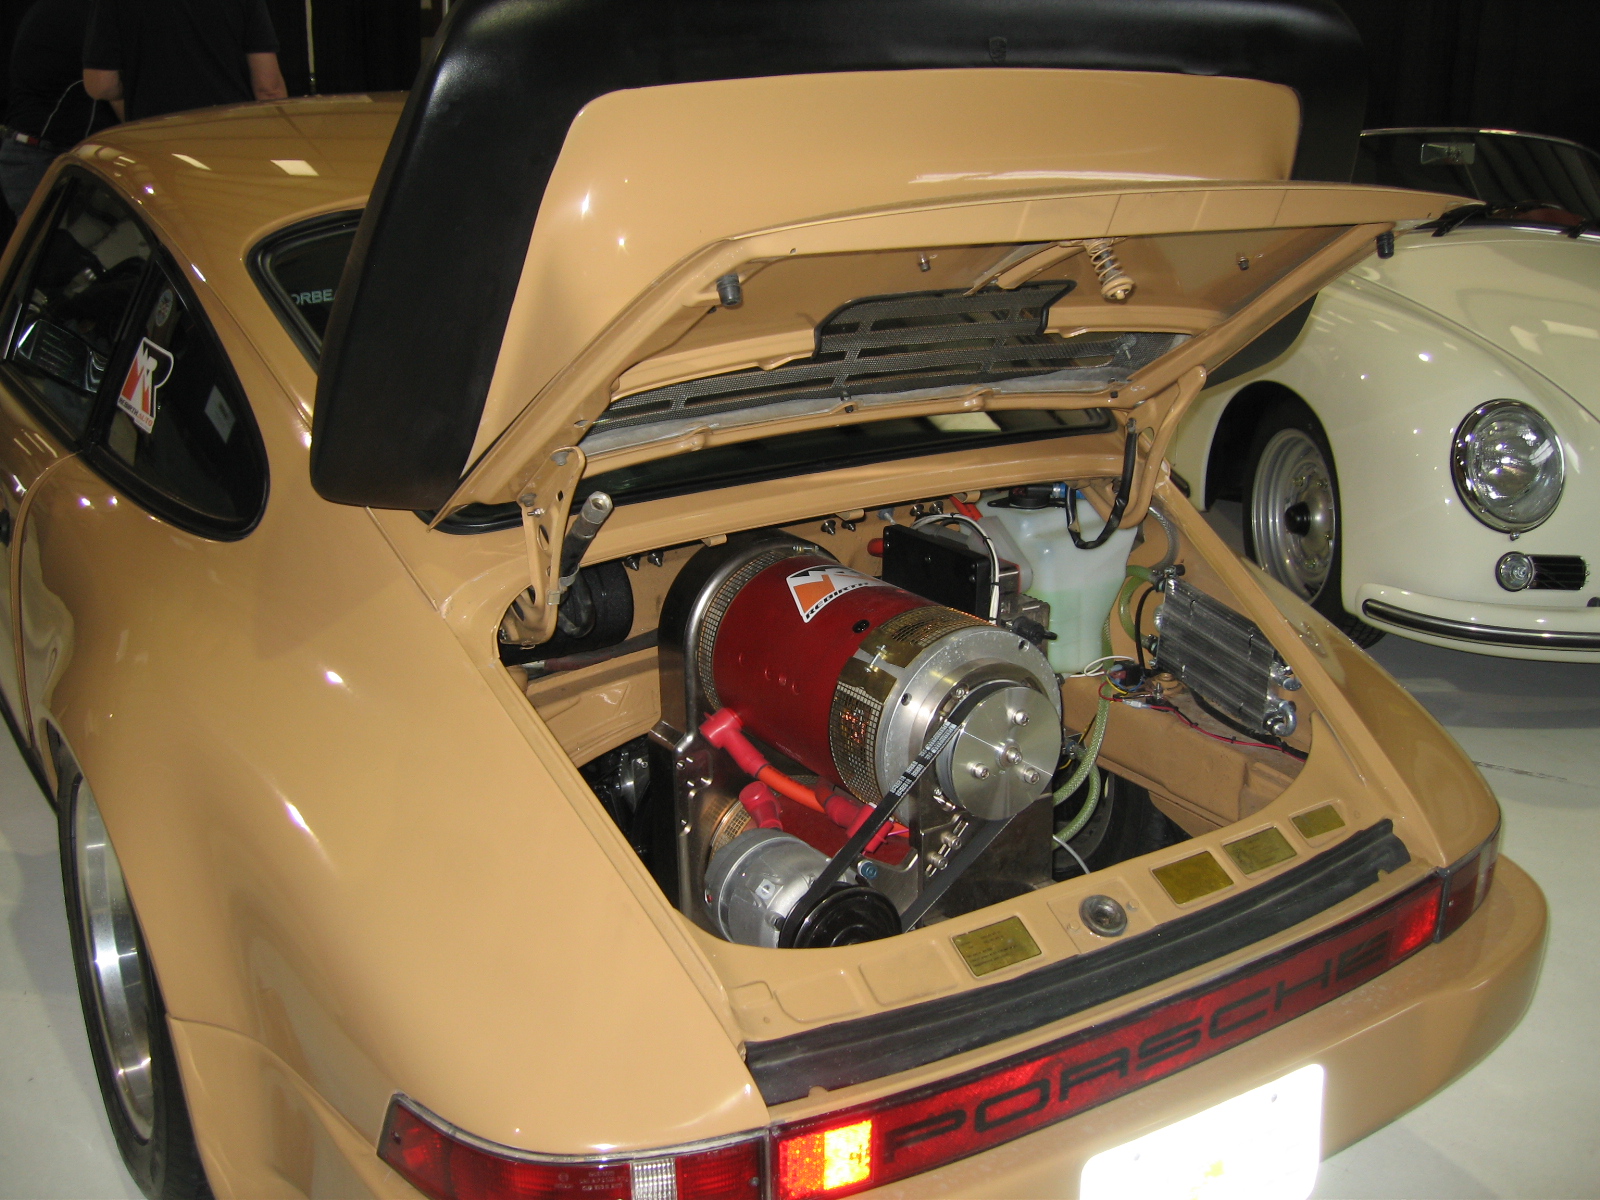 EVCCON 09  Porsche conversion with DUAL NetGain Warp 9 motors